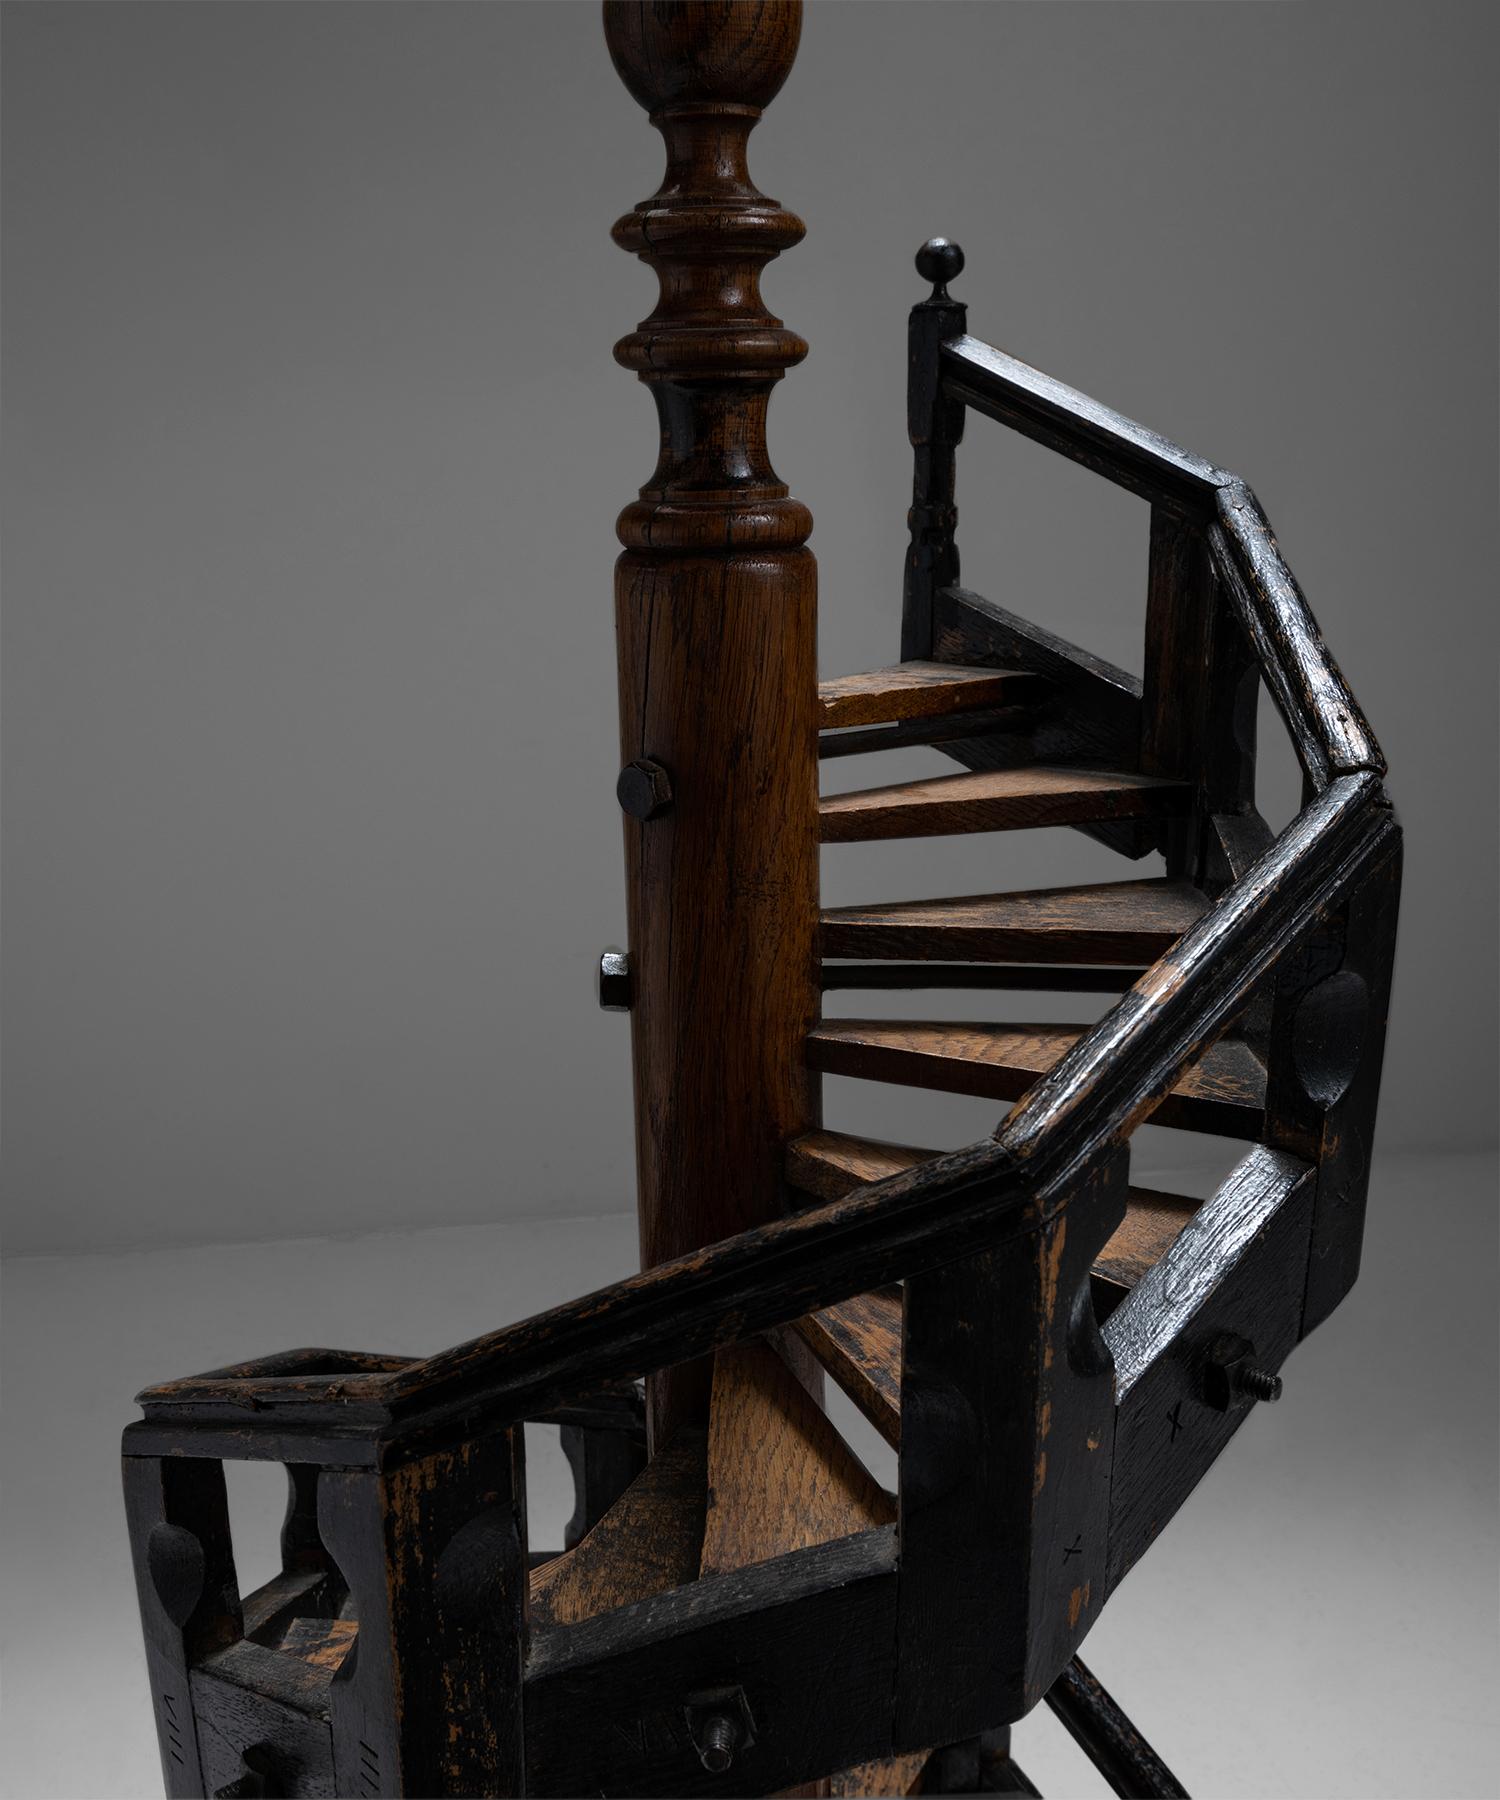 Modèle d'escalier architectural

Angleterre, vers 1890

Escalier en colimaçon en chêne avec balustrade ébonisée et pilier central.